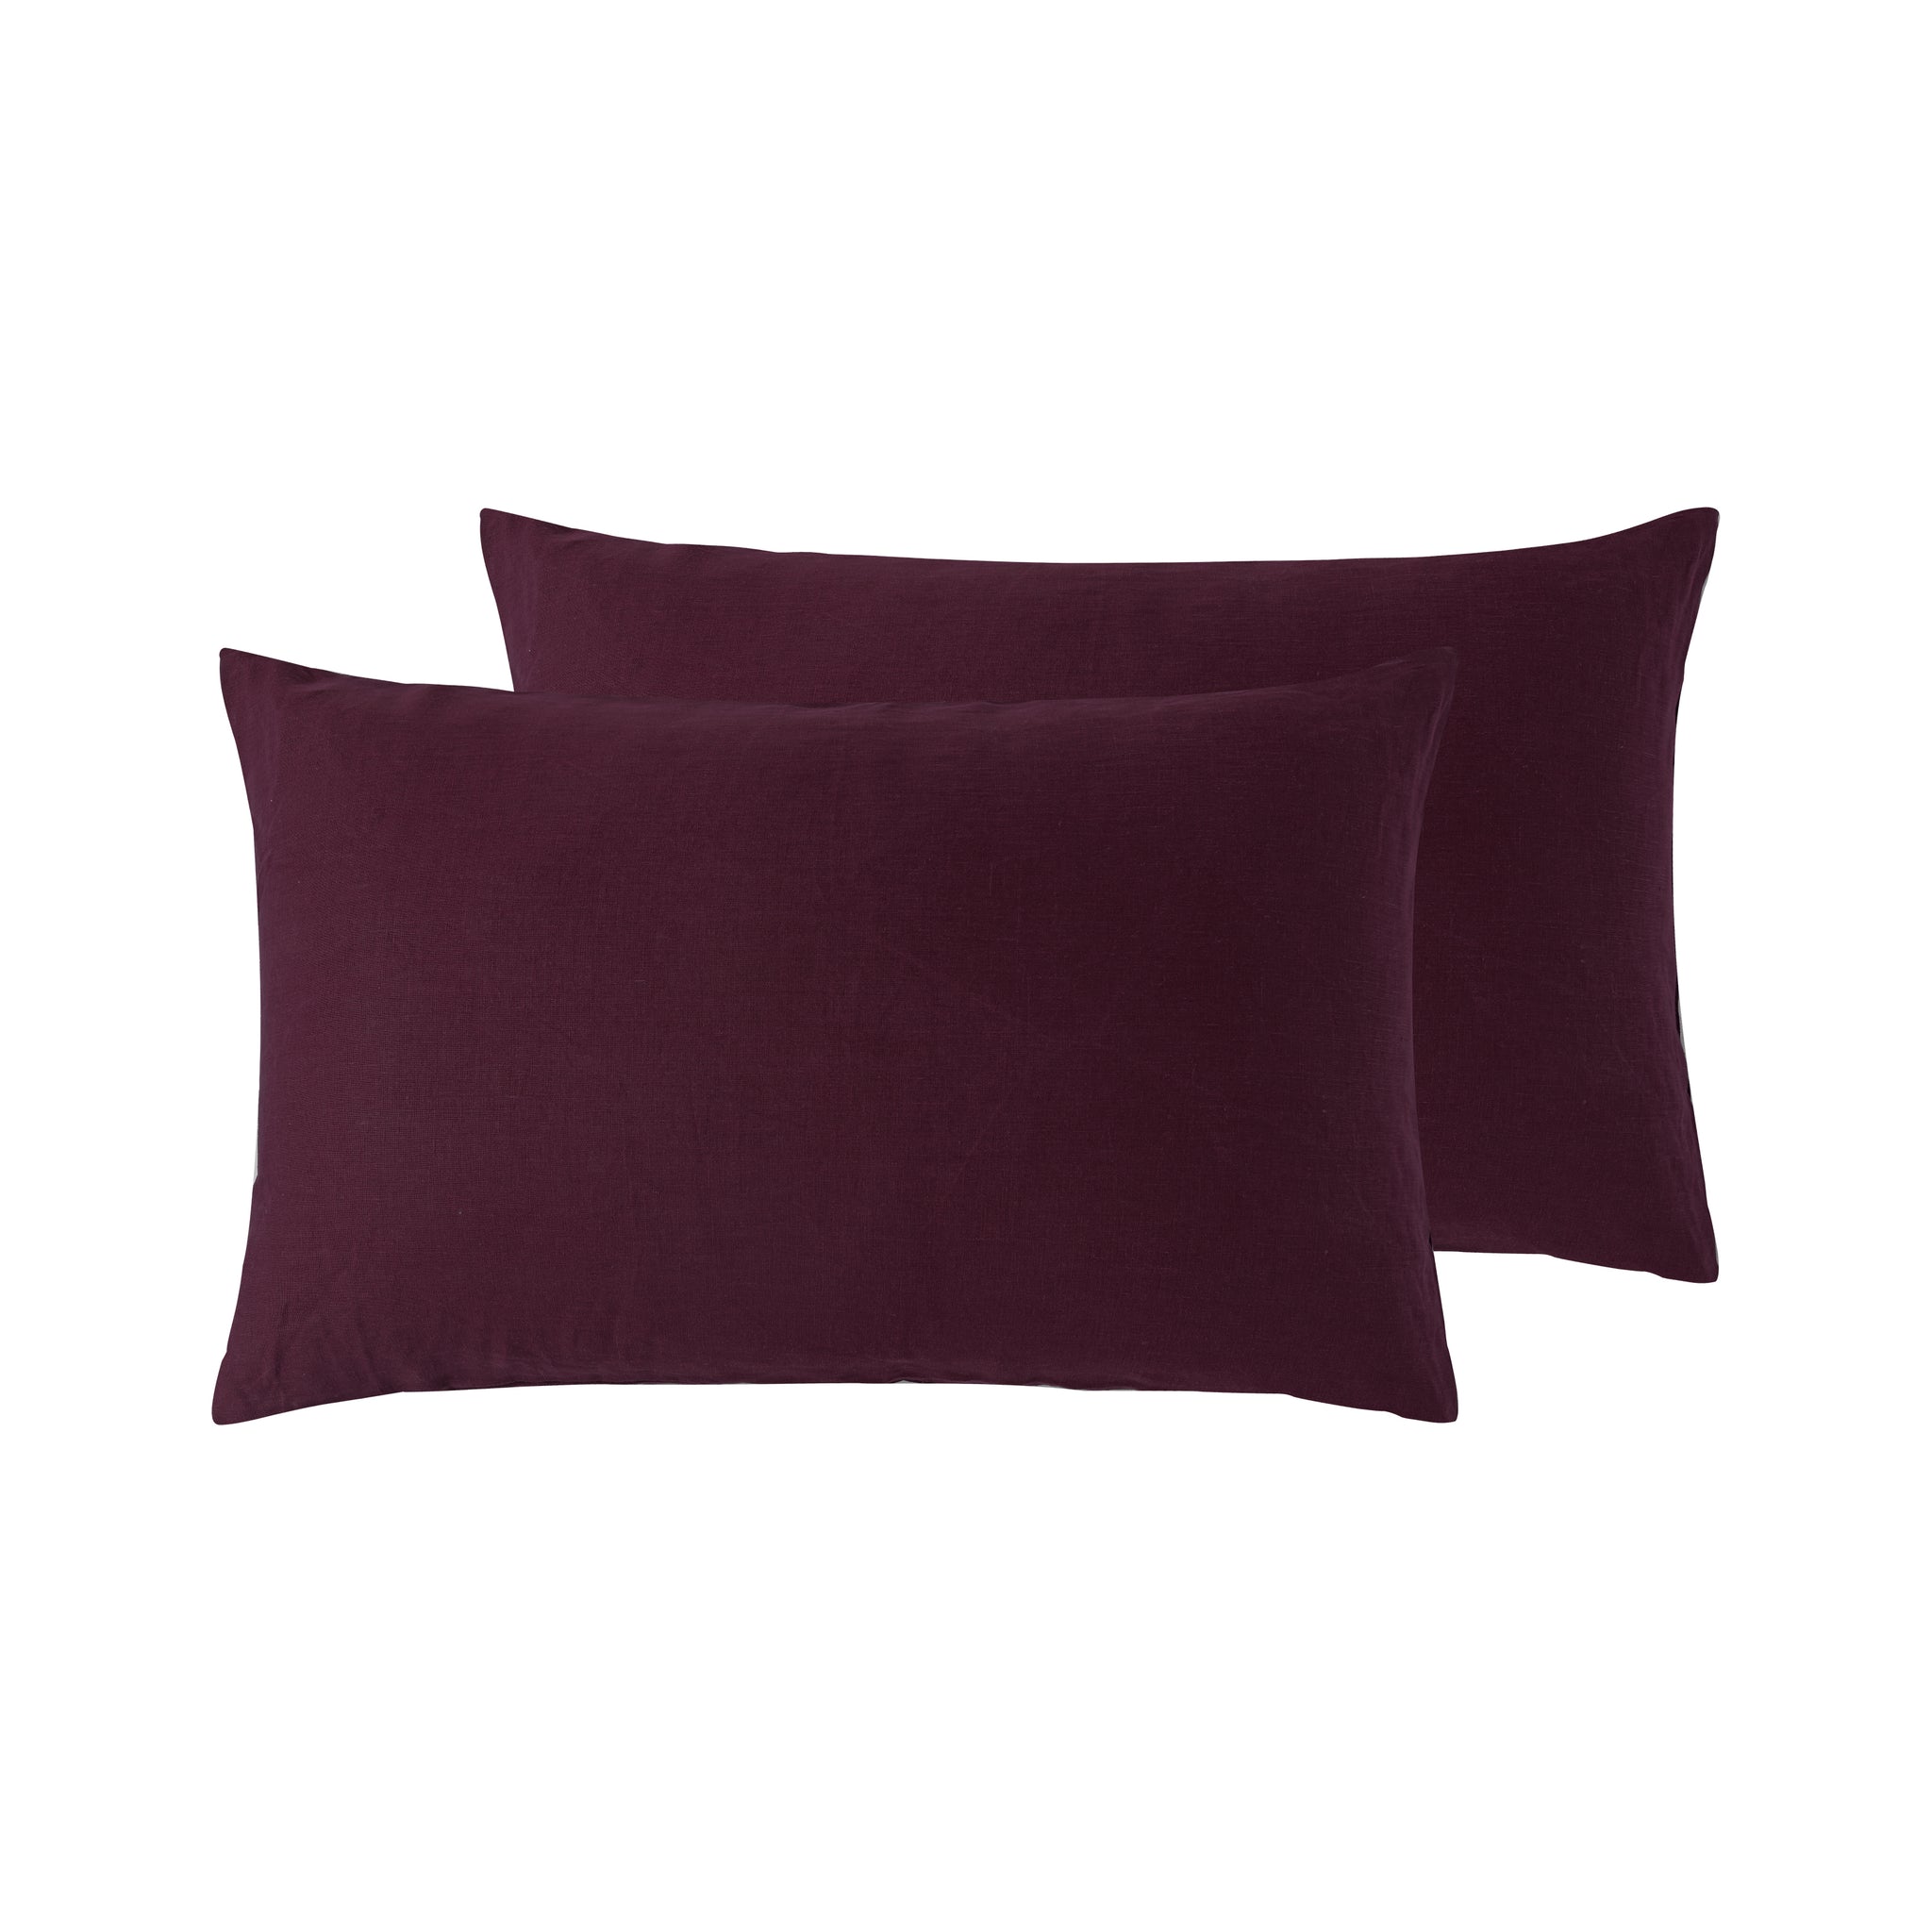 Merlot Burgundy - Pure Linen - Standard Pillowcase Pair